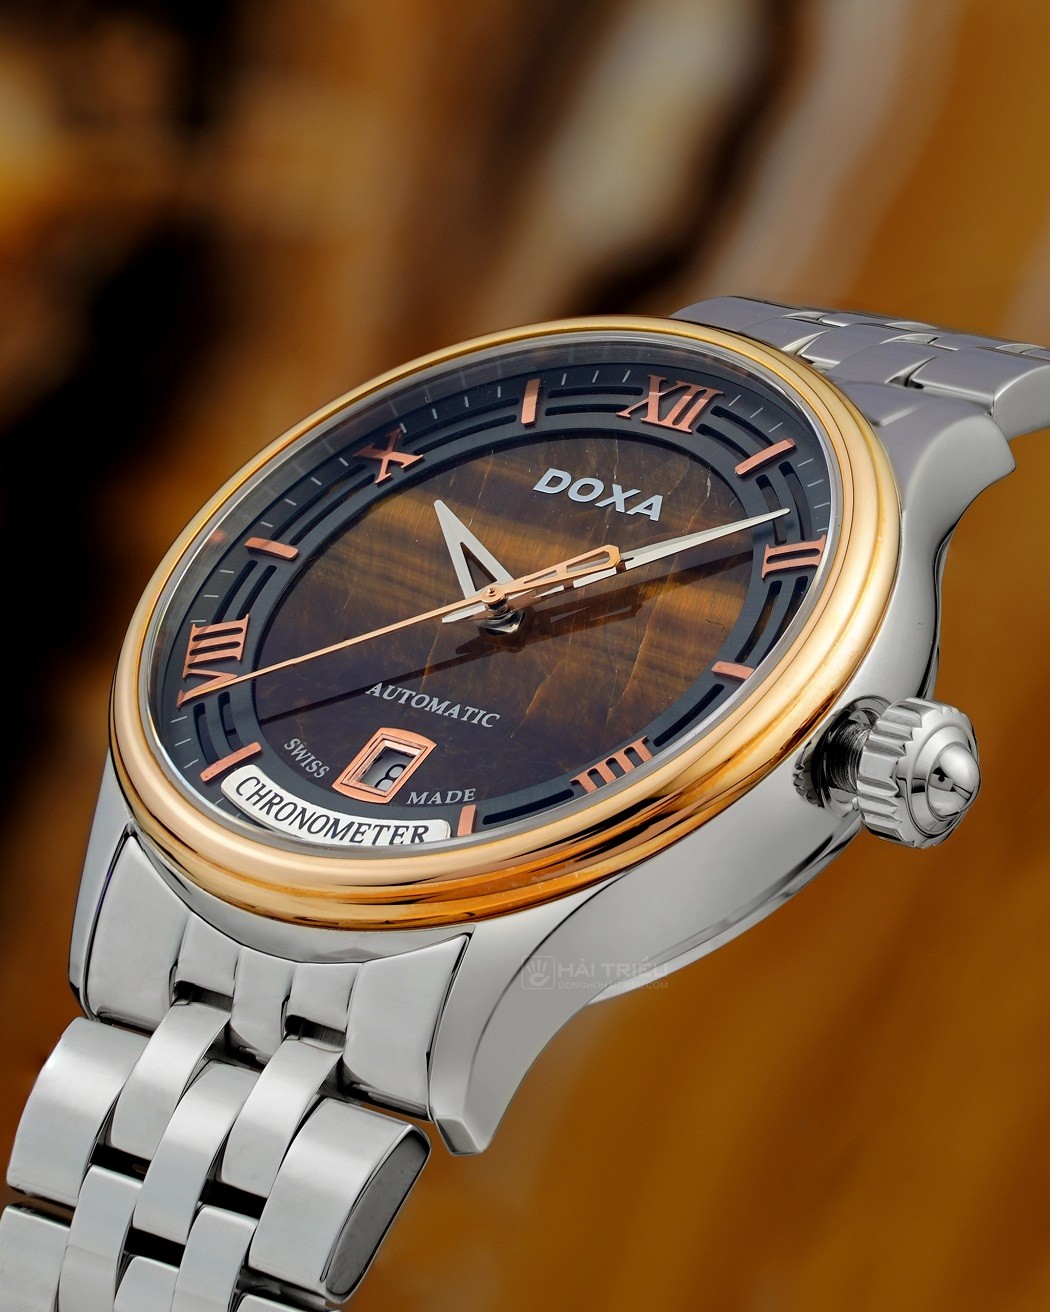 Đồng hồ Doxa vàng 18k được gắn nhãn Chronometer